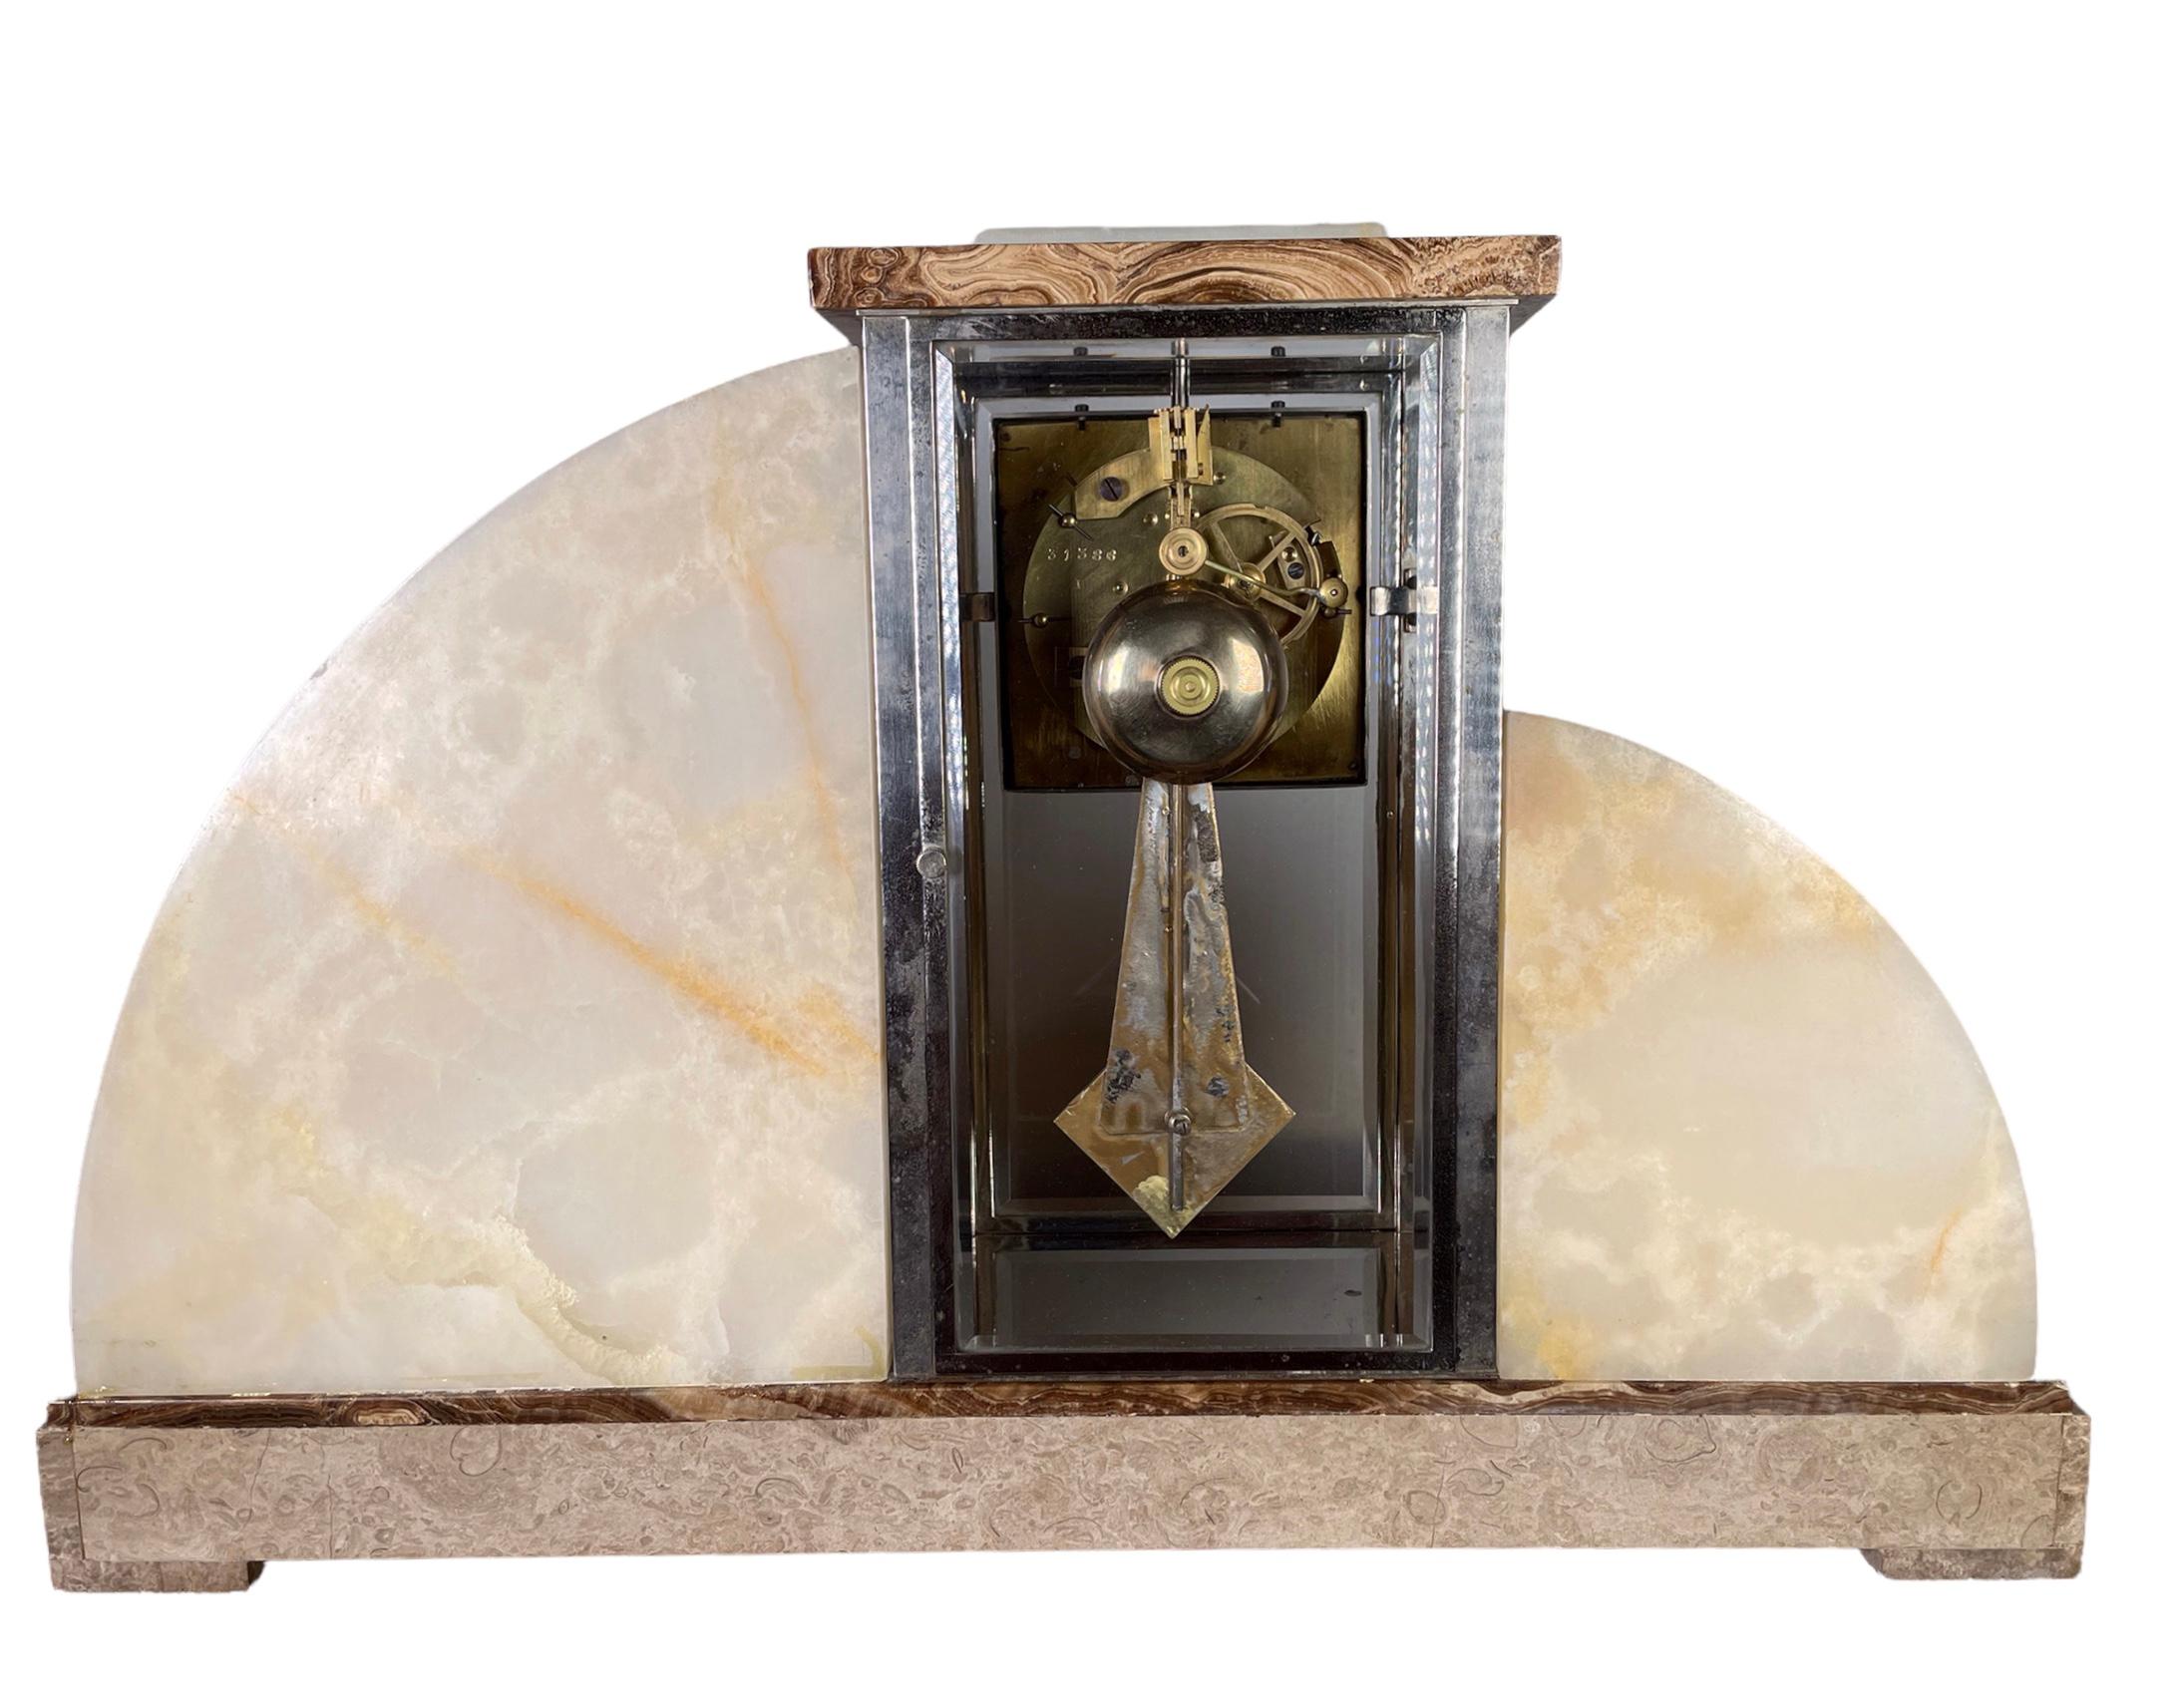 Eine französische Art-Déco-Uhr aus Marmor, von dem angesehenen Bildhauer Demetre Chipurus (unsigniert). Es gibt noch weitere Exemplare dieser signierten Figuren, wie auf einigen der Abbildungen zu sehen ist. 
Zwei junge Mädchen halten sich